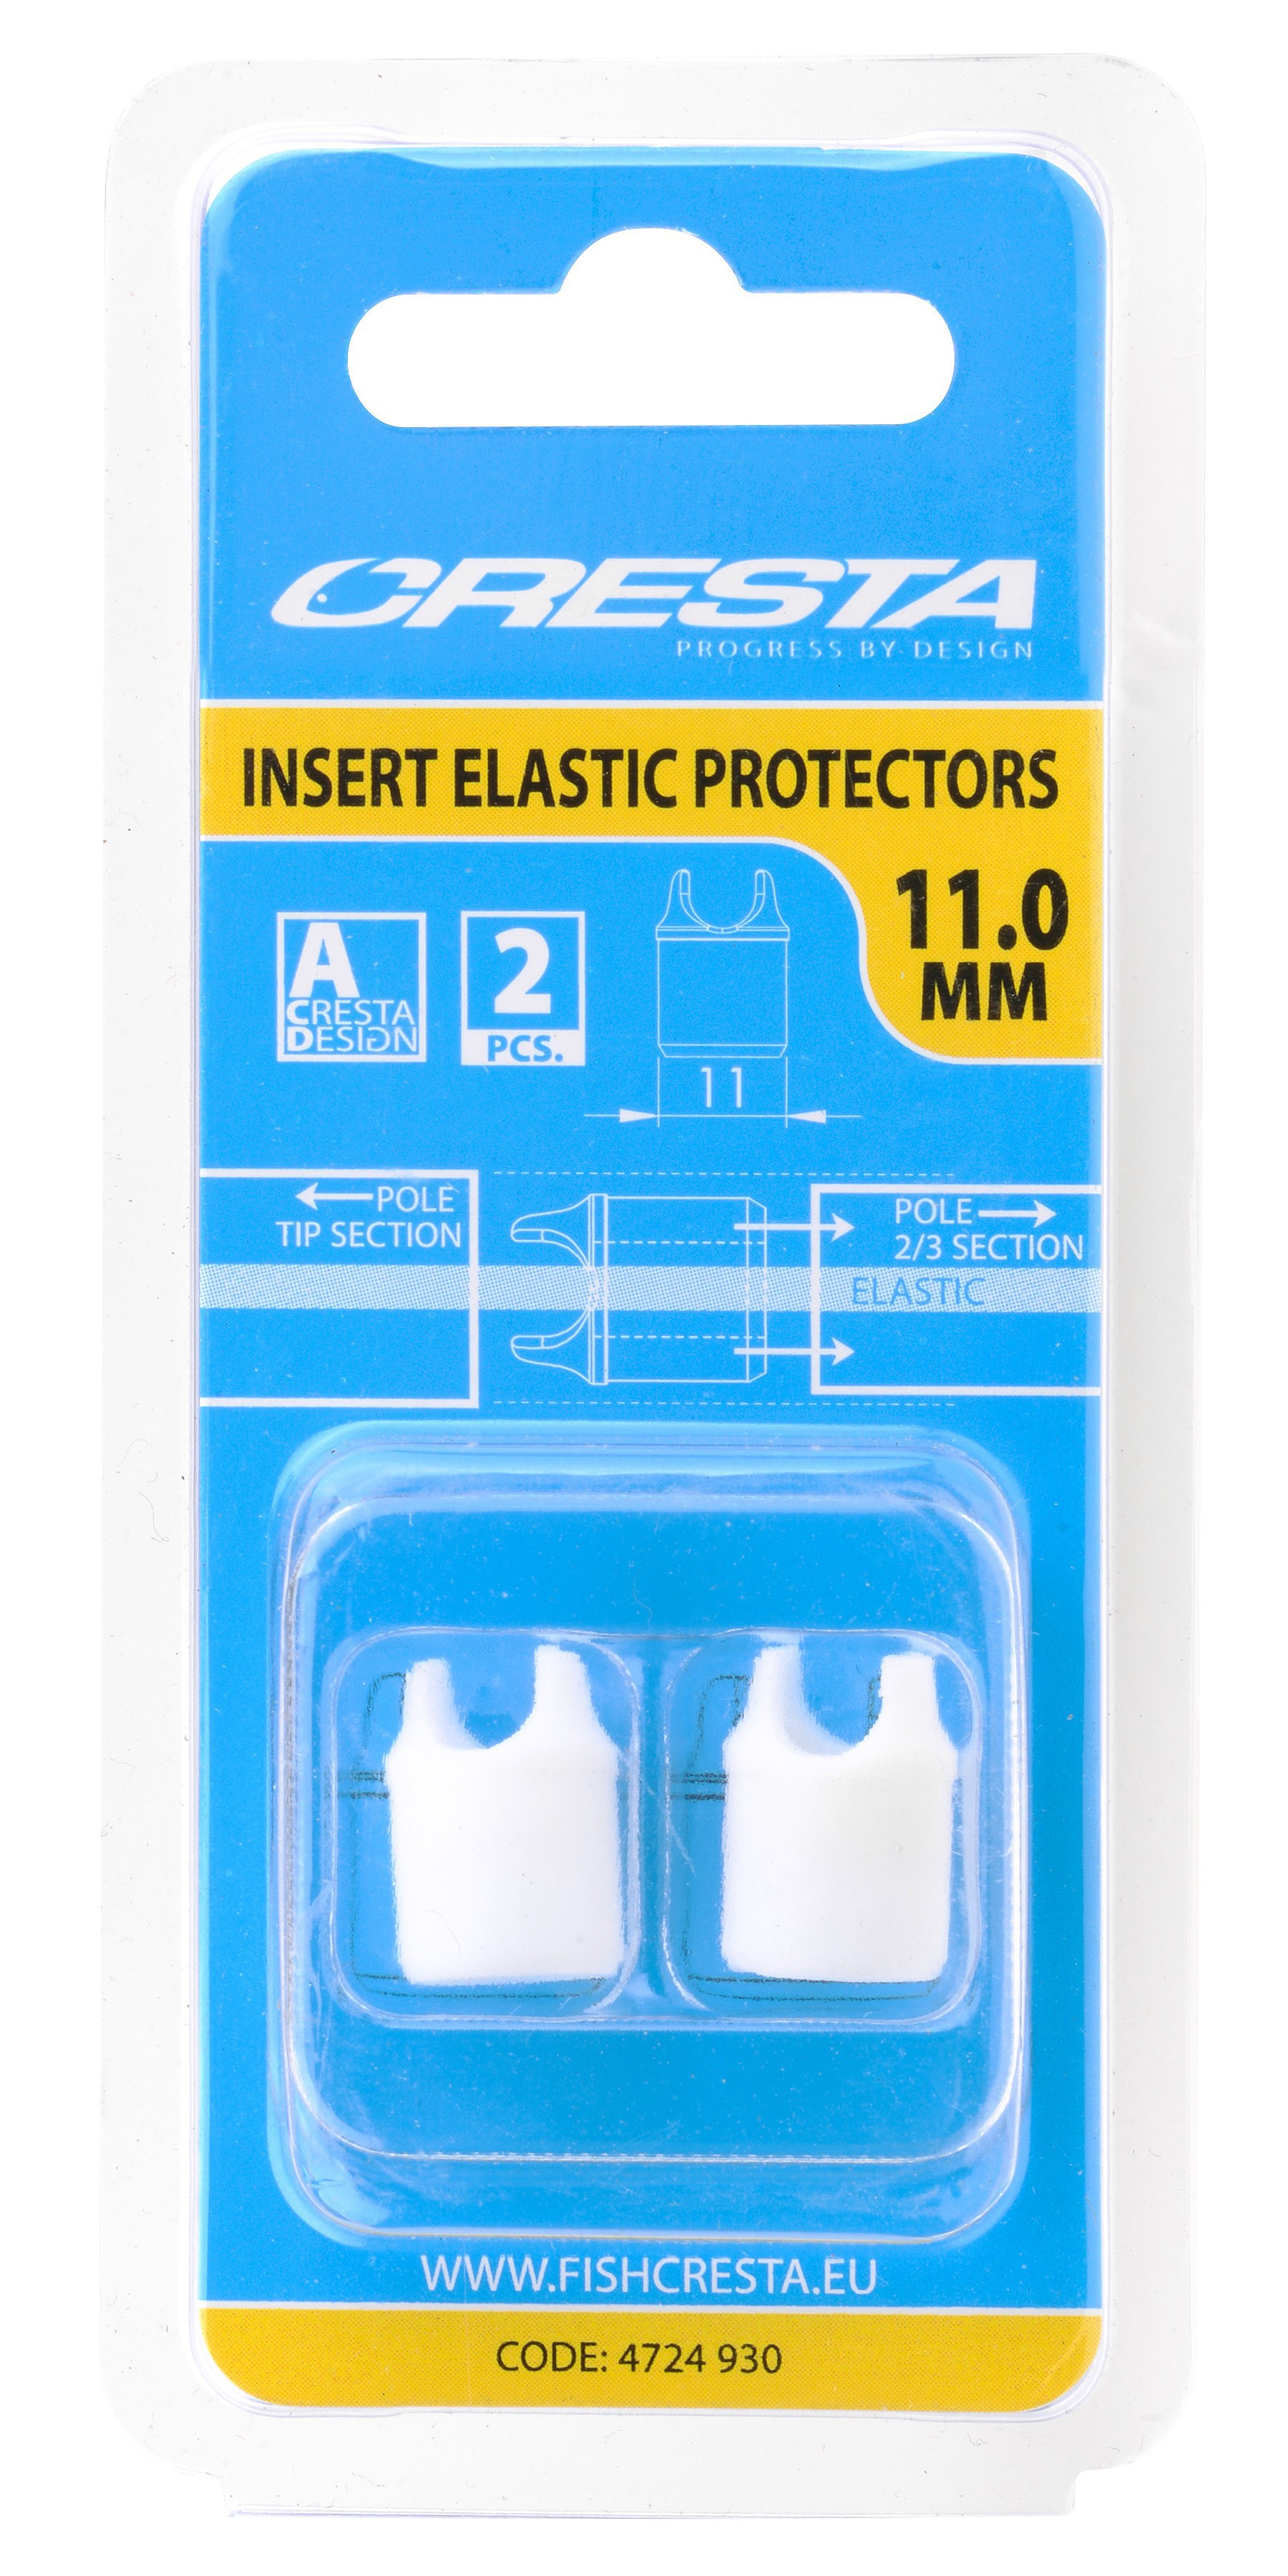 Spro - Cresta Insert Elastic Protectors 11.0 mm